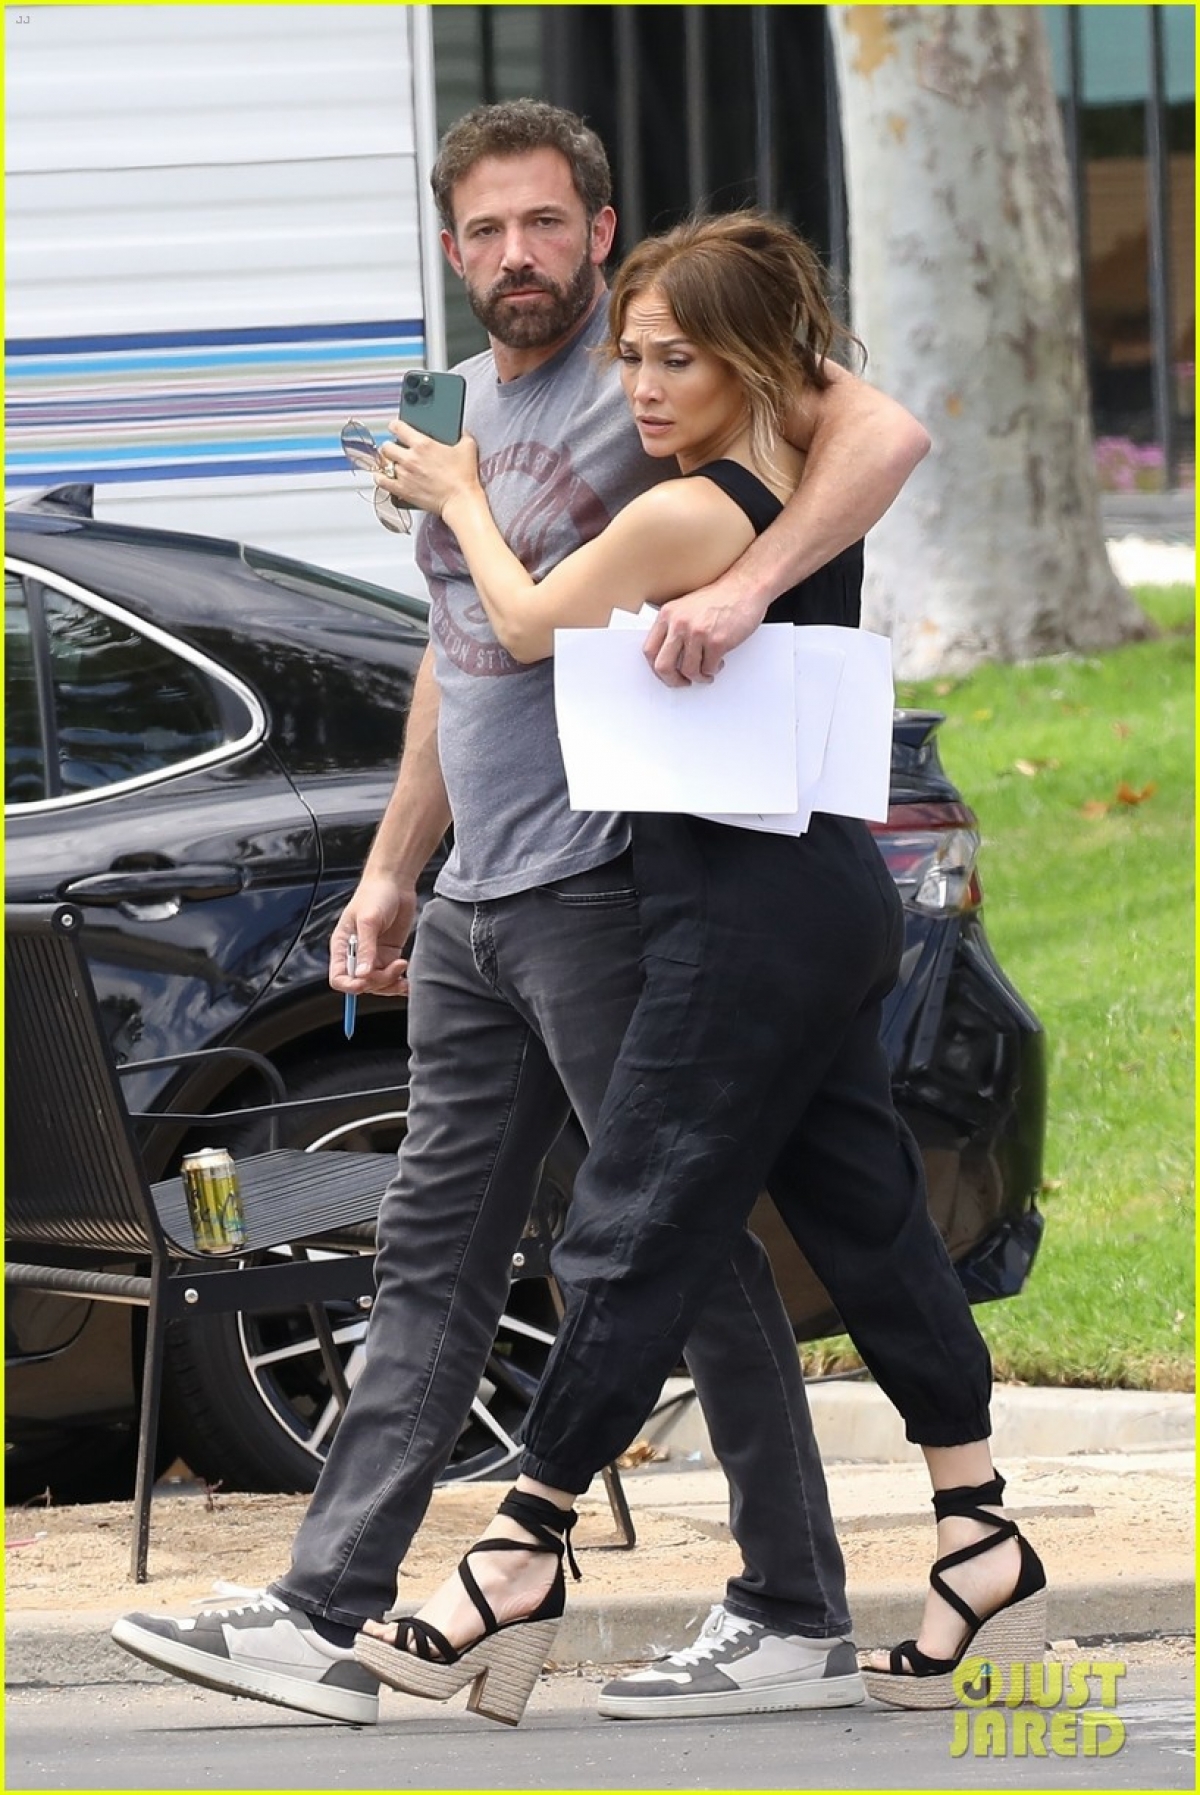 Jennifer Lopez và bạn trai khóa môi ngọt ngào trên phim trường - Ảnh 3.